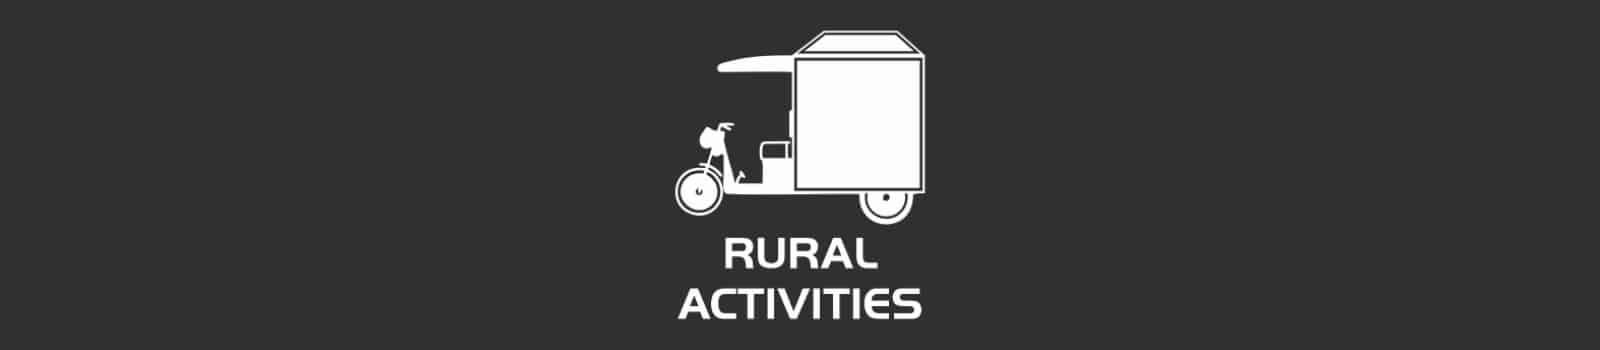 Rural Activities